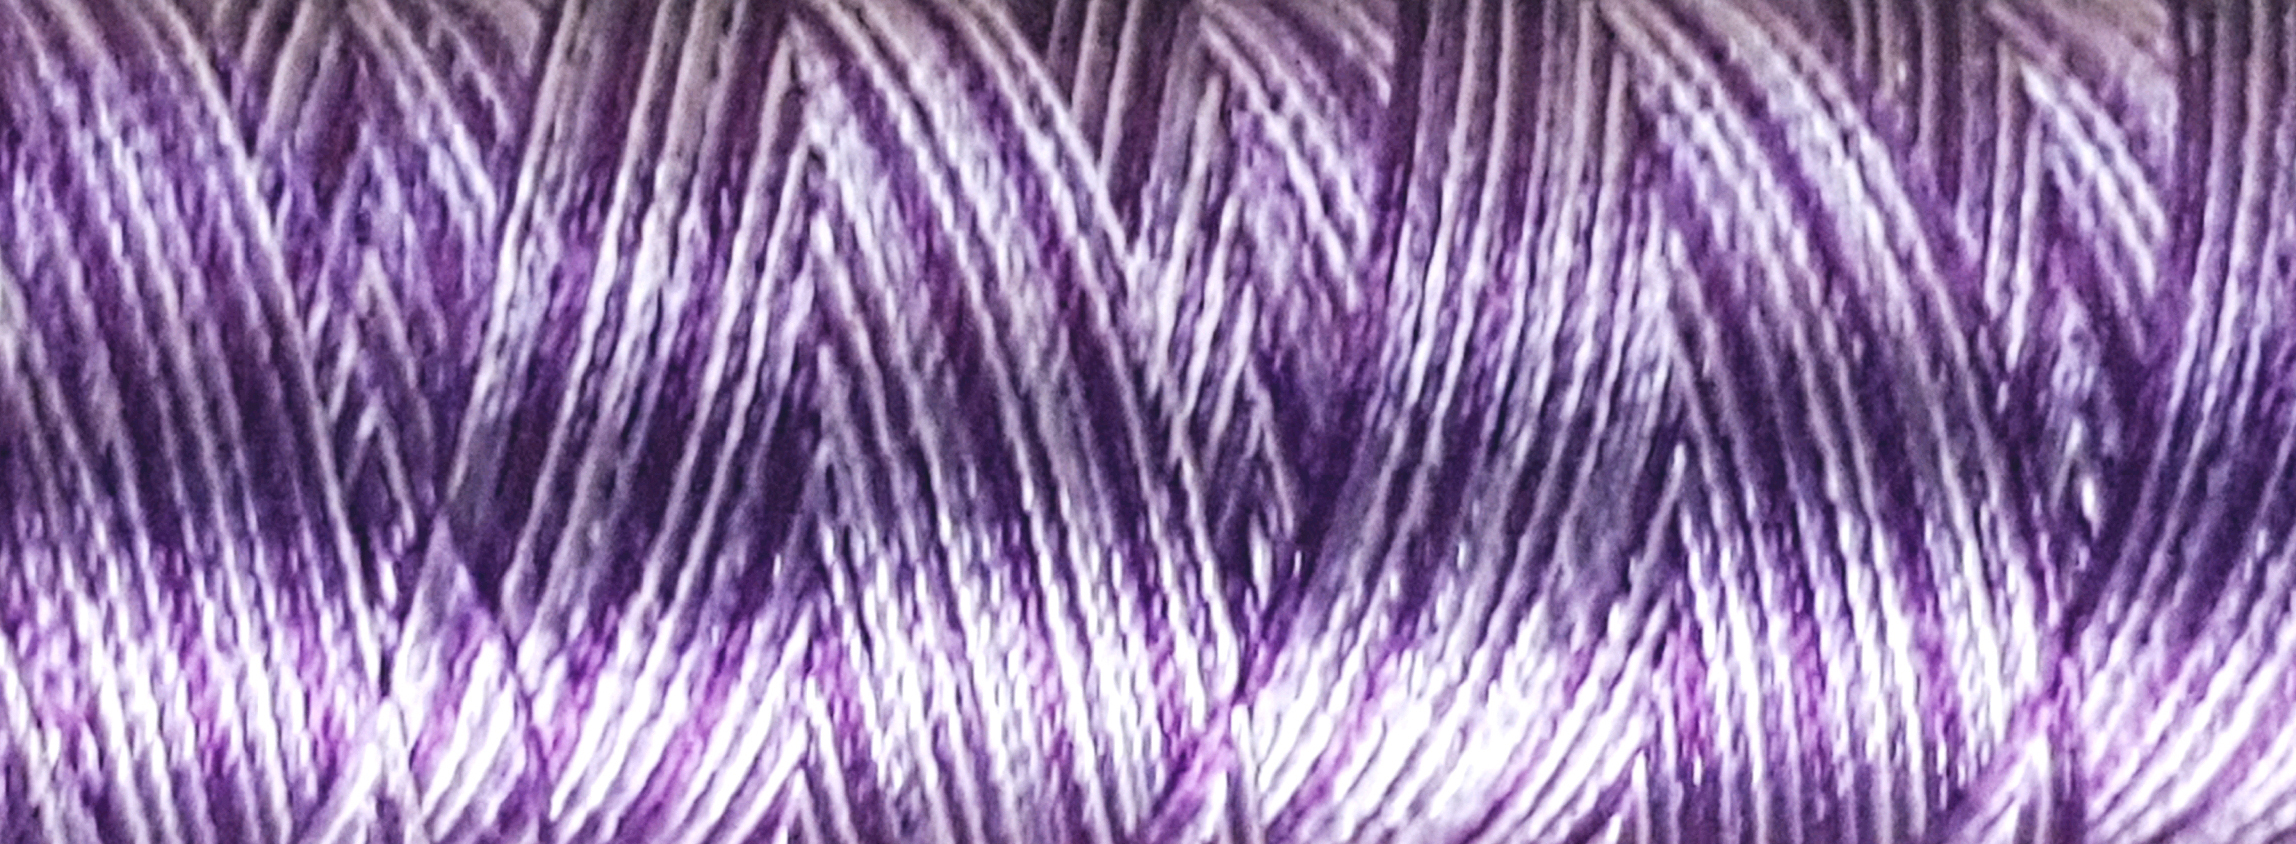 Lavender bush Machine Embroidery Design - 3 sizes